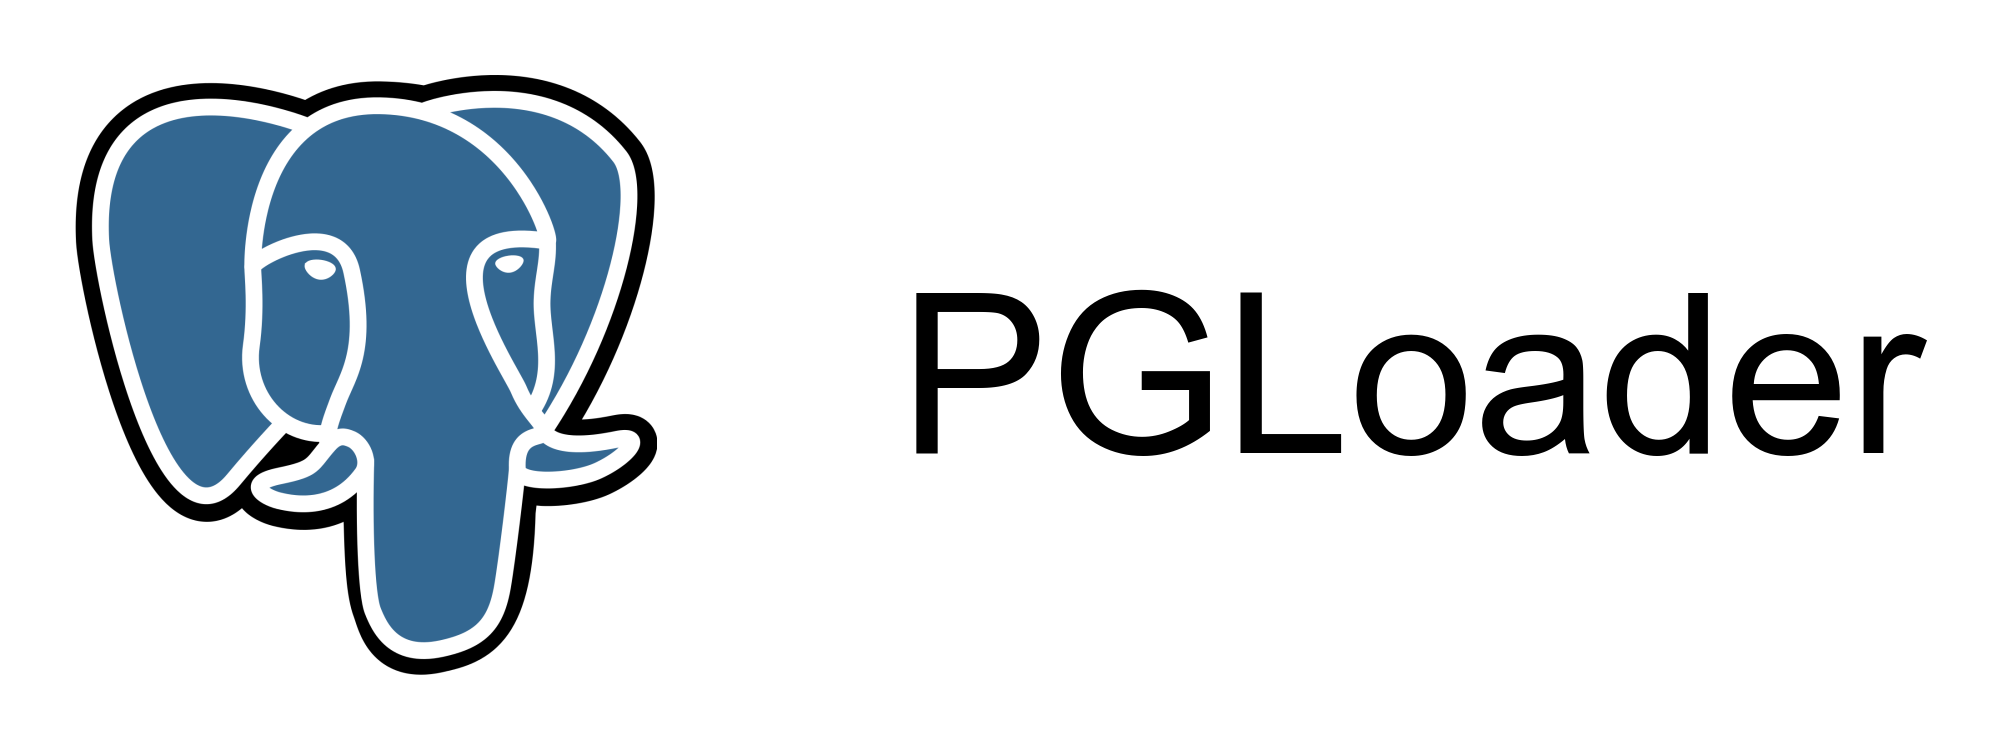 PGLoader banner.